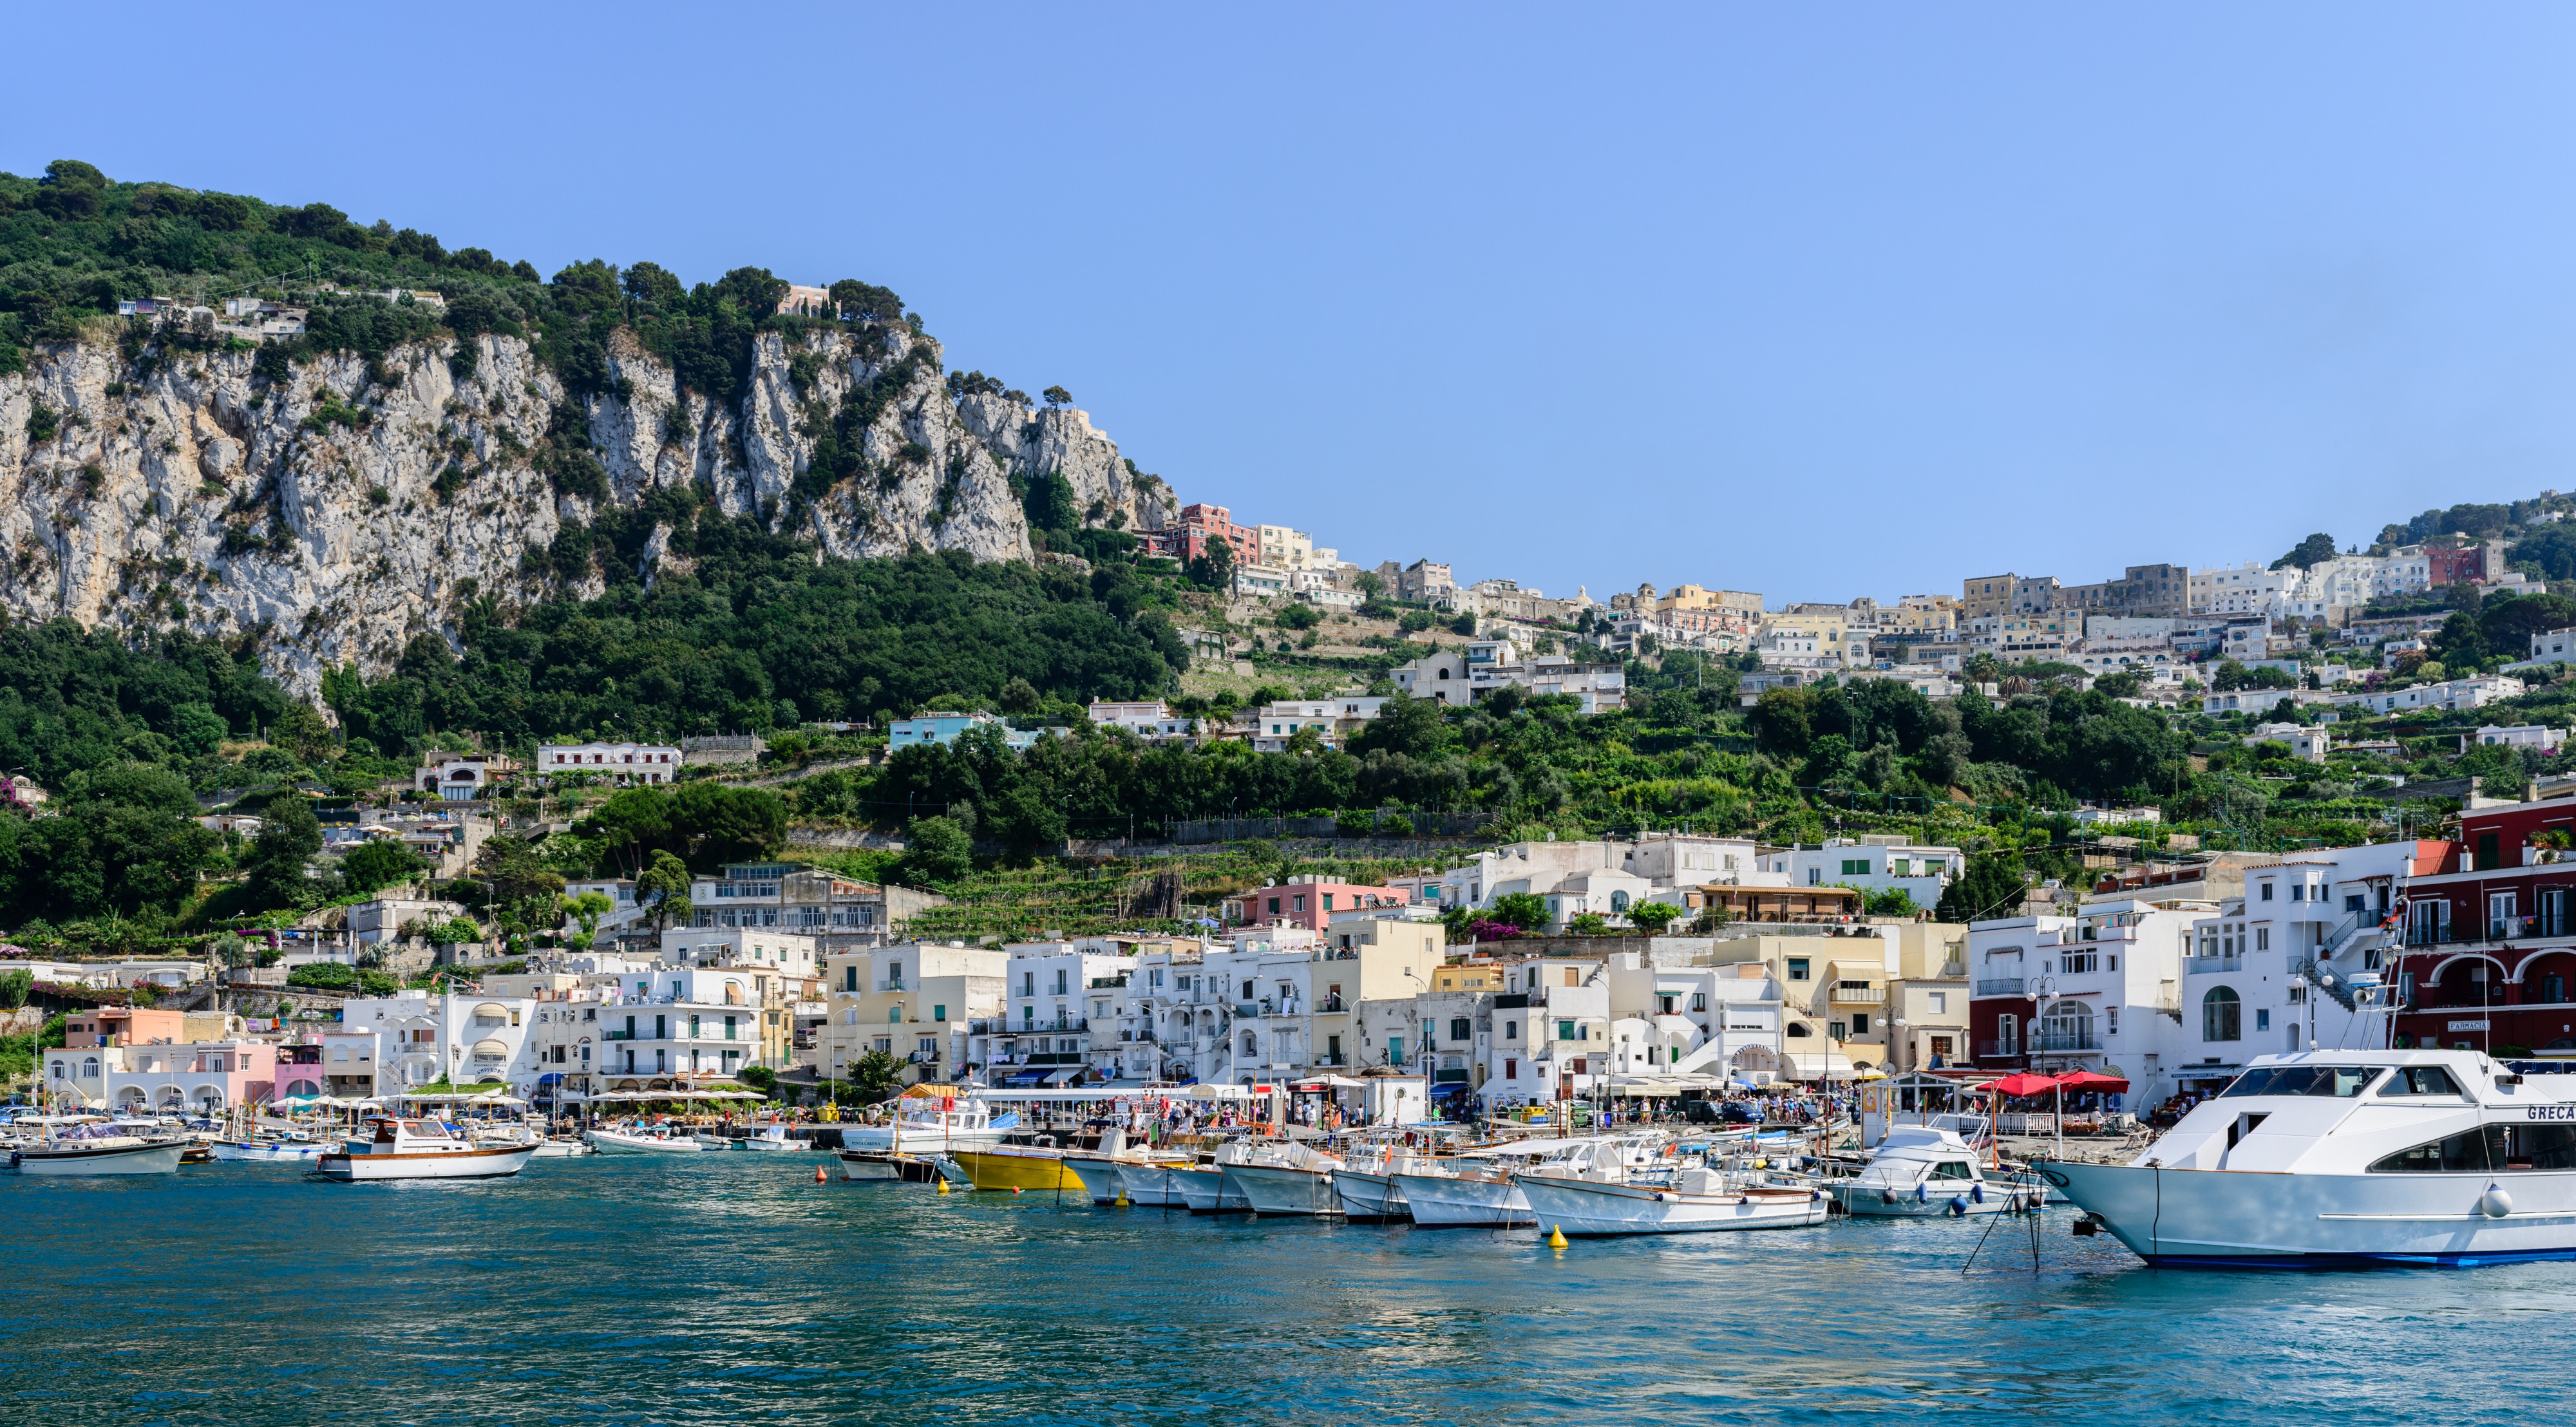 Capri island - Campania - Italy - July 12th 2013 - 18